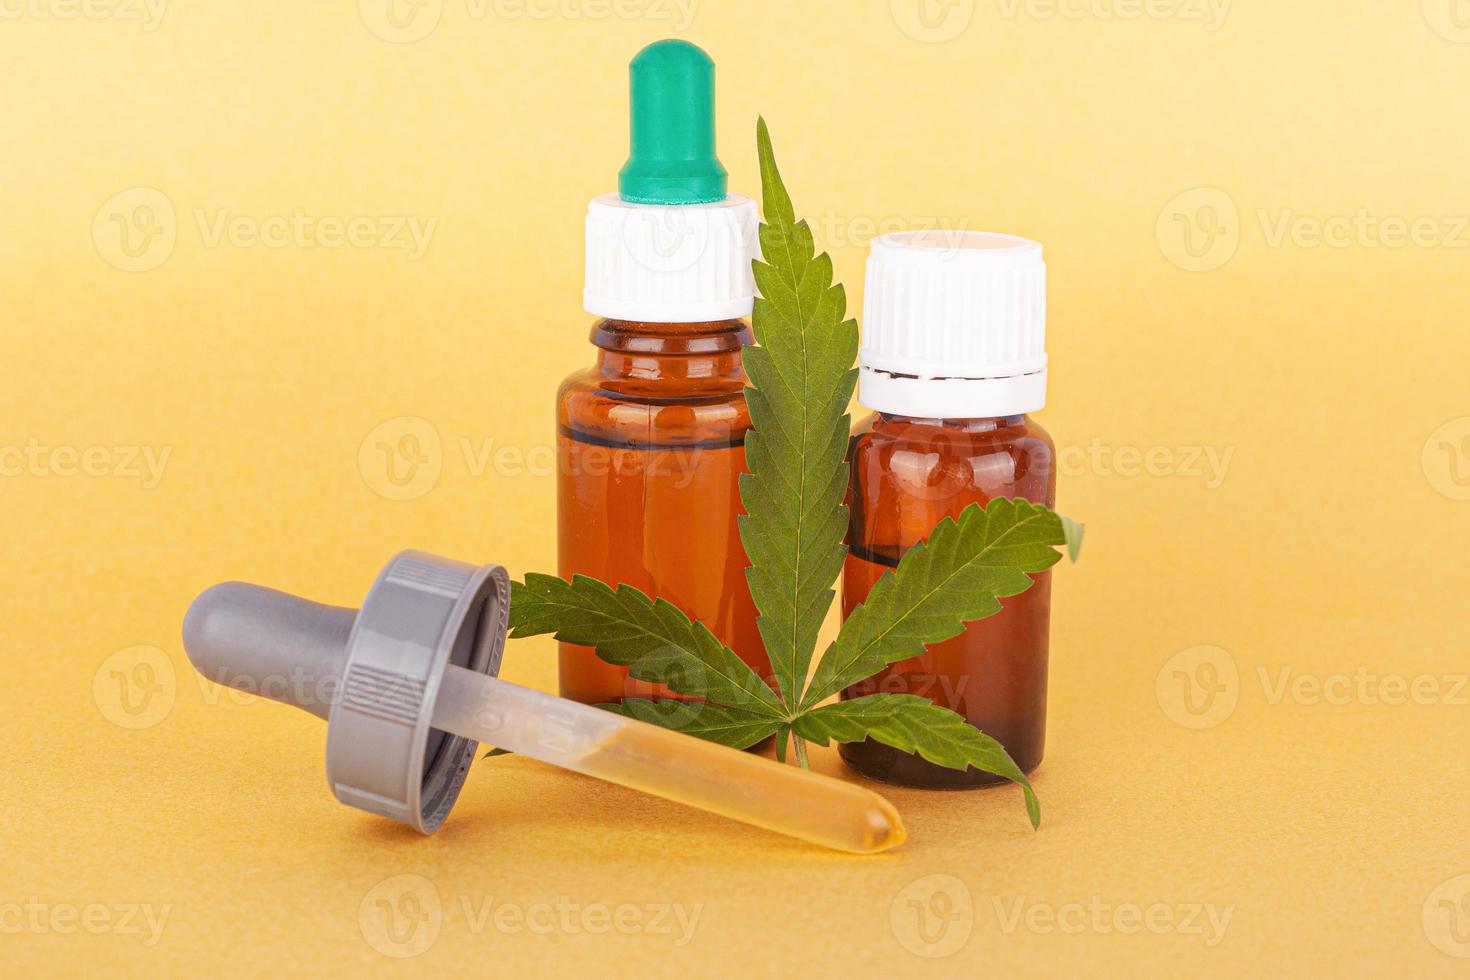 extraire de l'huile de cannabis médical, de l'élixir à base de plantes et un remède naturel contre le stress et les maladies photo